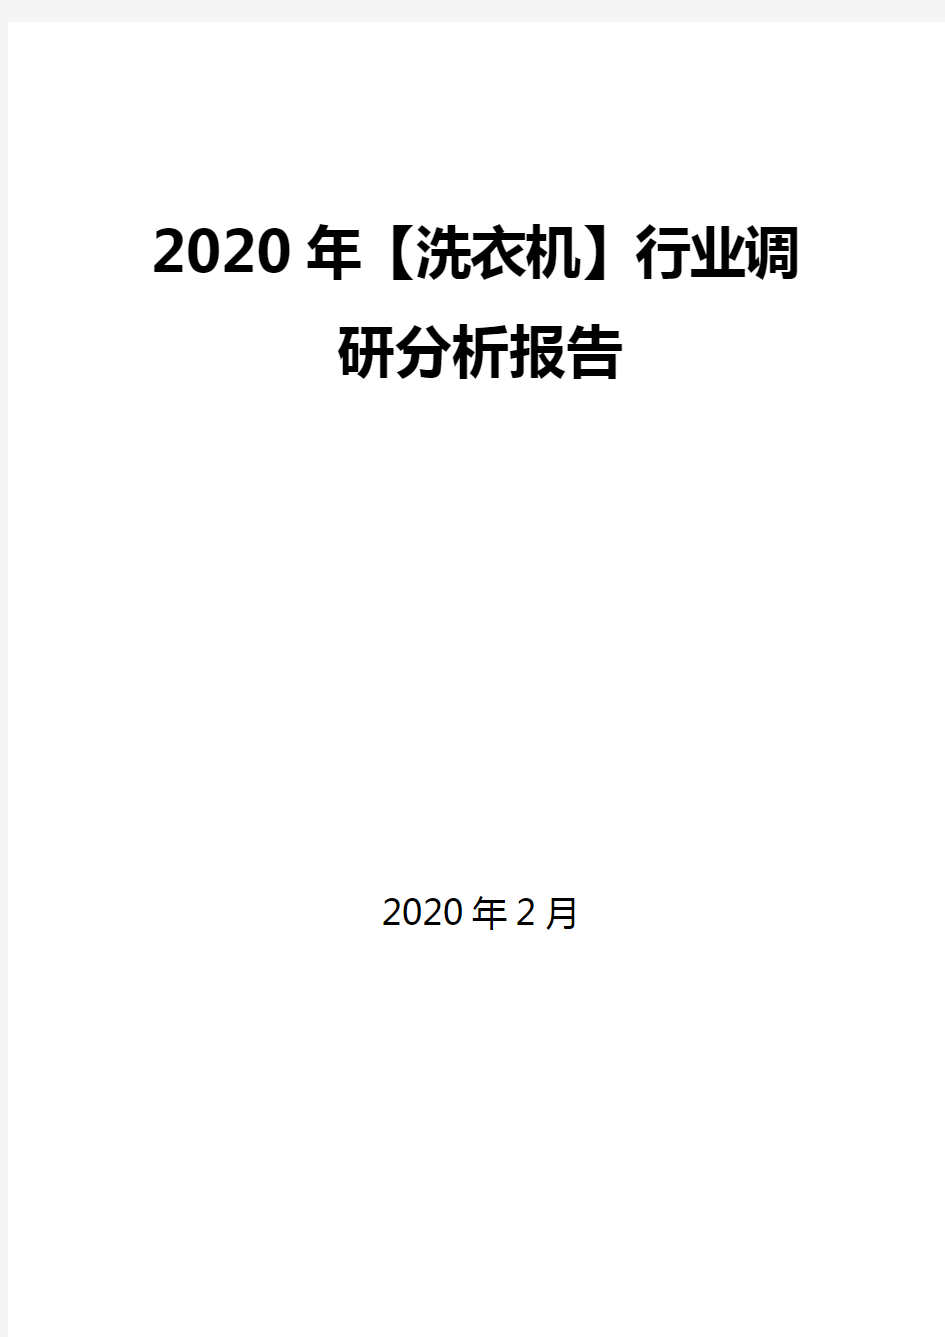 2020年【洗衣机】行业调研分析报告